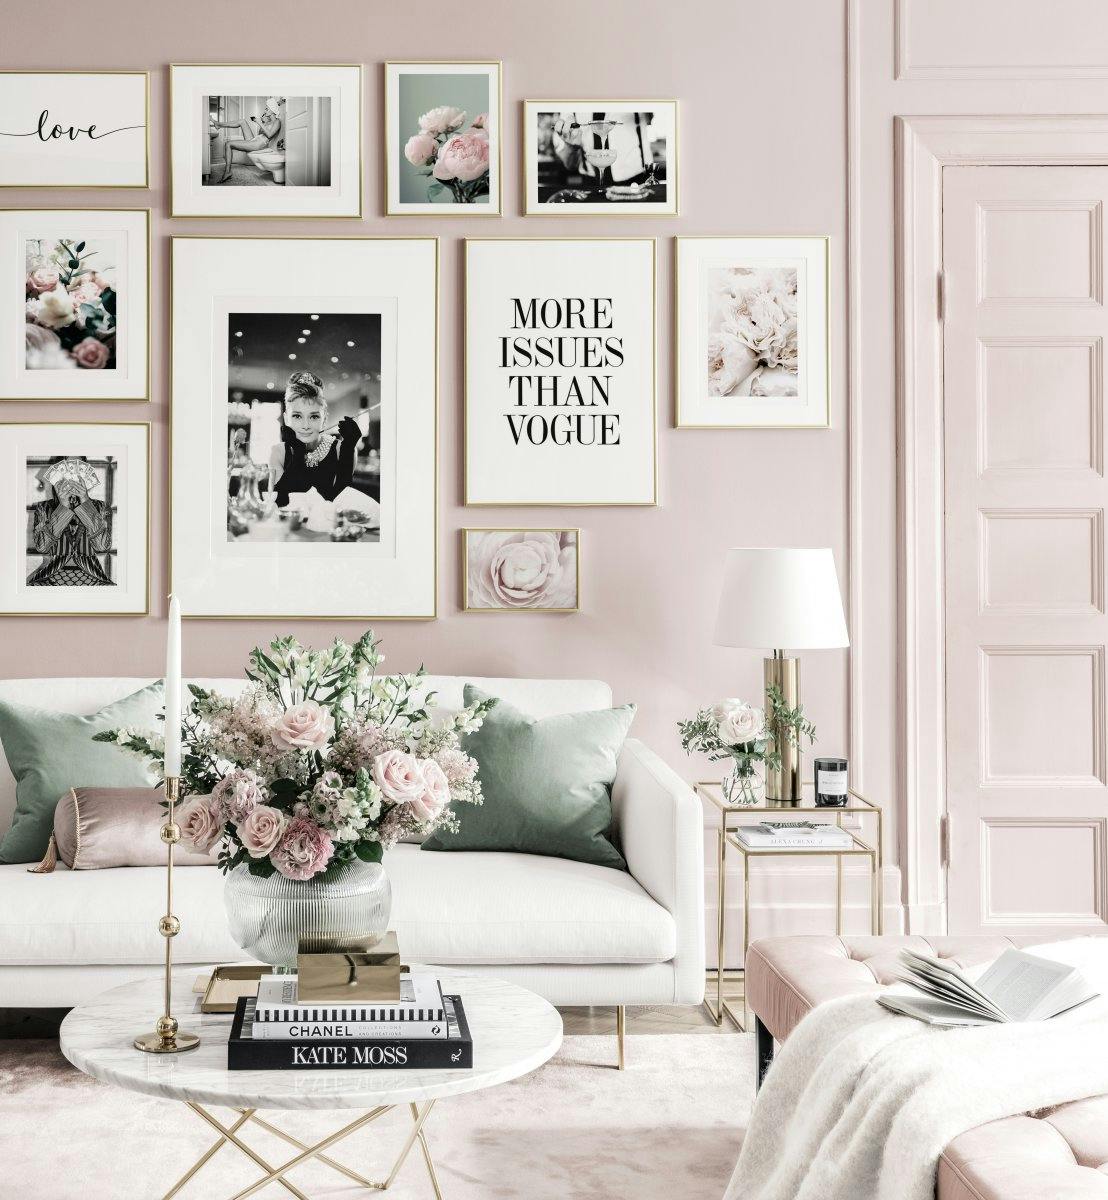 Murales de cuadros bonitos pósters populares pósters de moda interior rosado marcos dorados